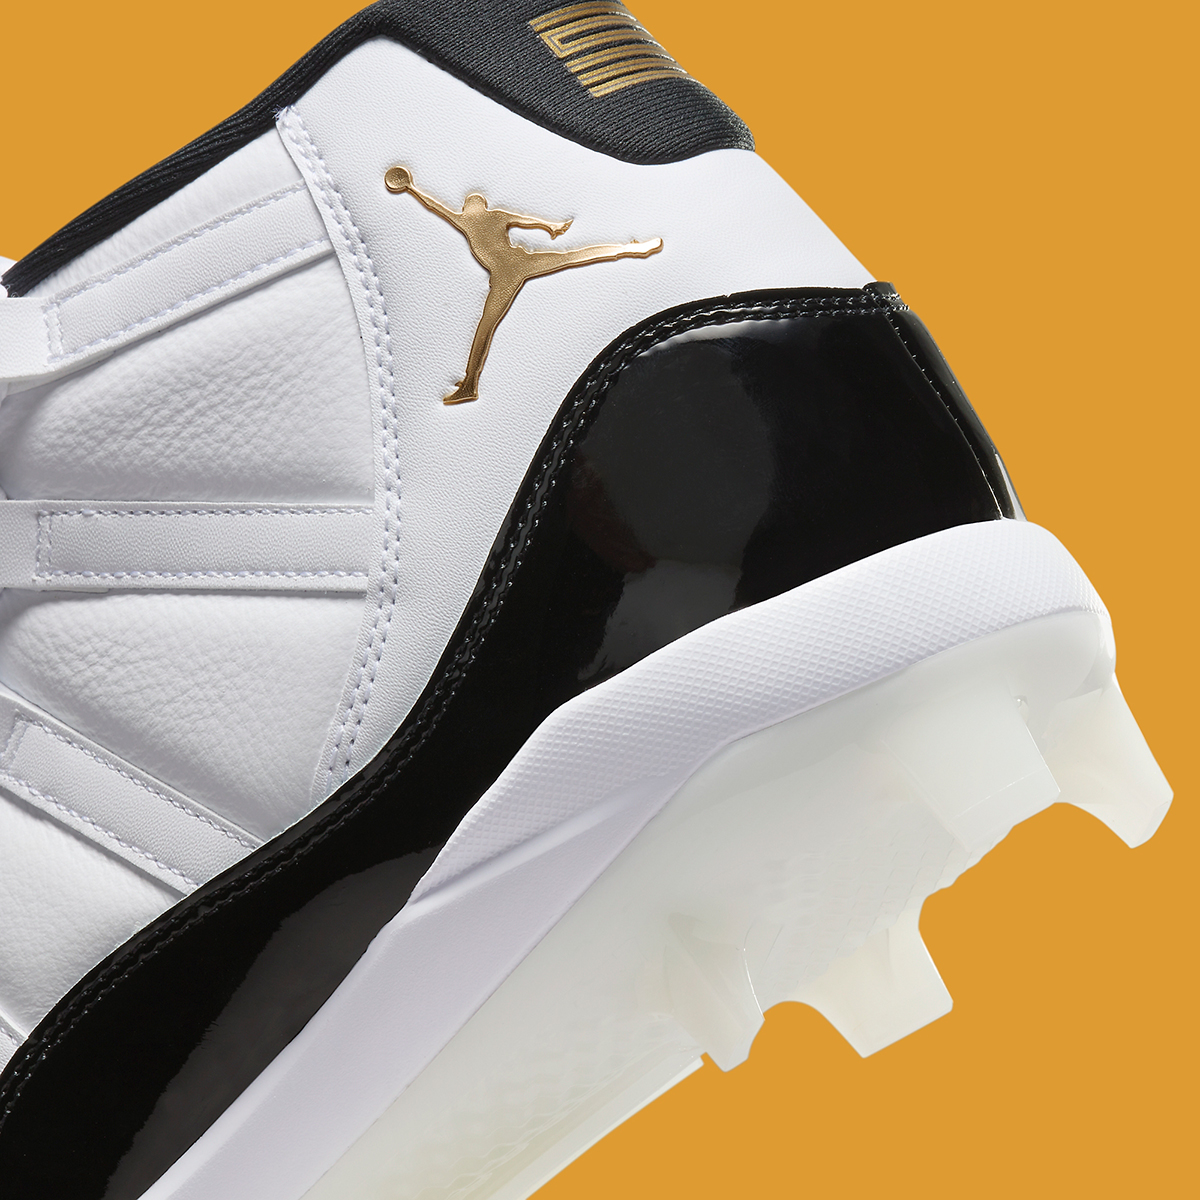 Nike Air Jordan Spizike 1 Low SE Tie Dye UK 10 Baseball Cleats Fv5415 107 2